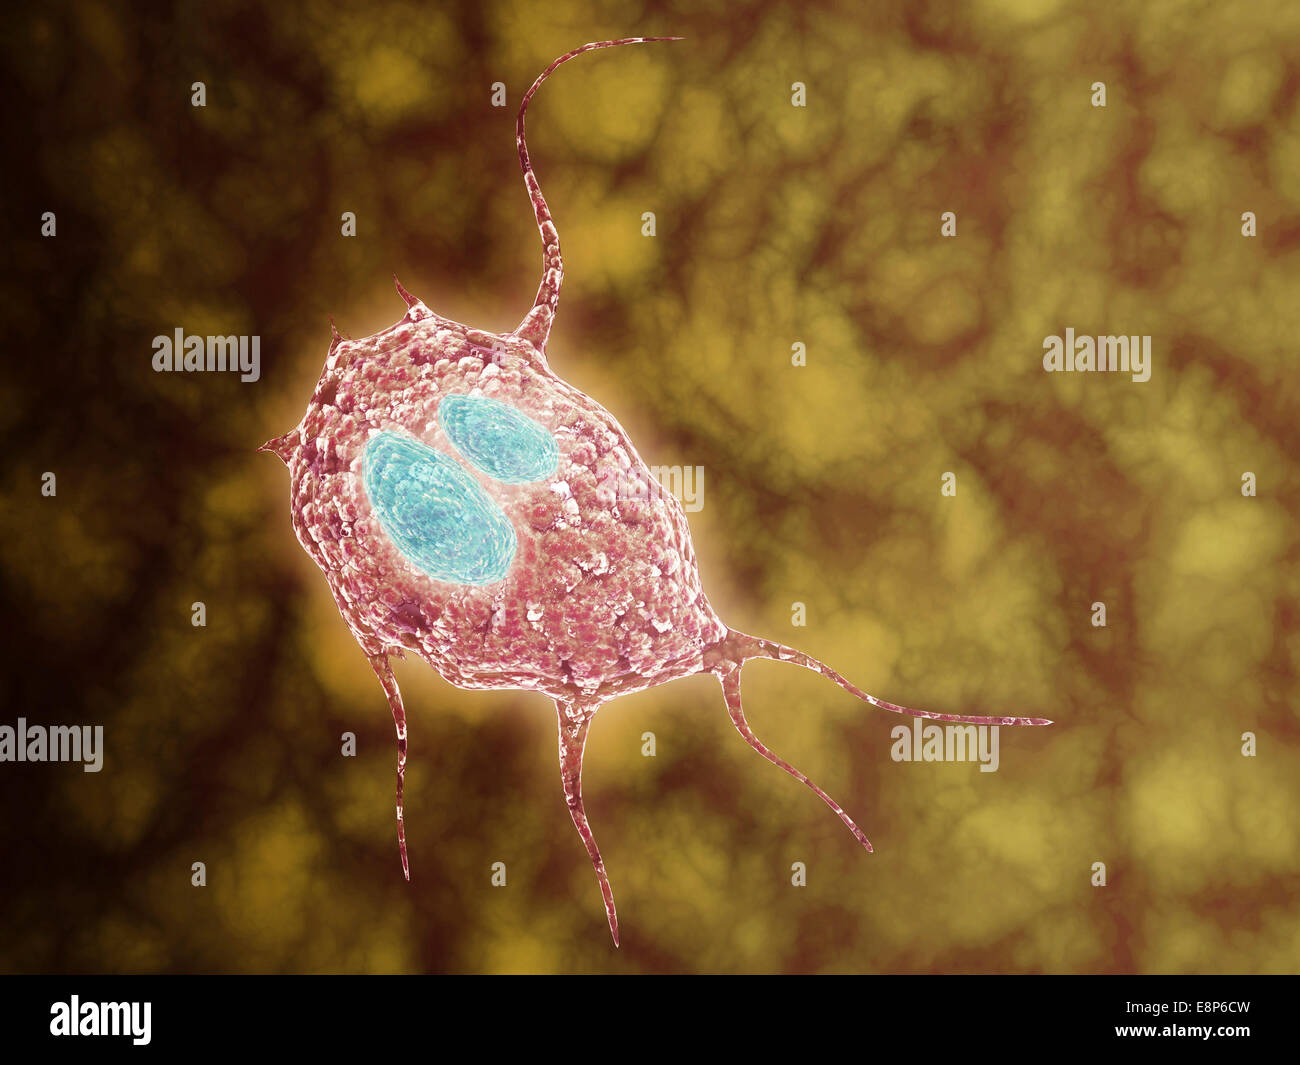 Mikroskopische Ansicht der Giardiasis, eine Infektionskrankheit, verursacht durch einen einzelligen Parasiten Giardia Lamblia genannt. Stockfoto